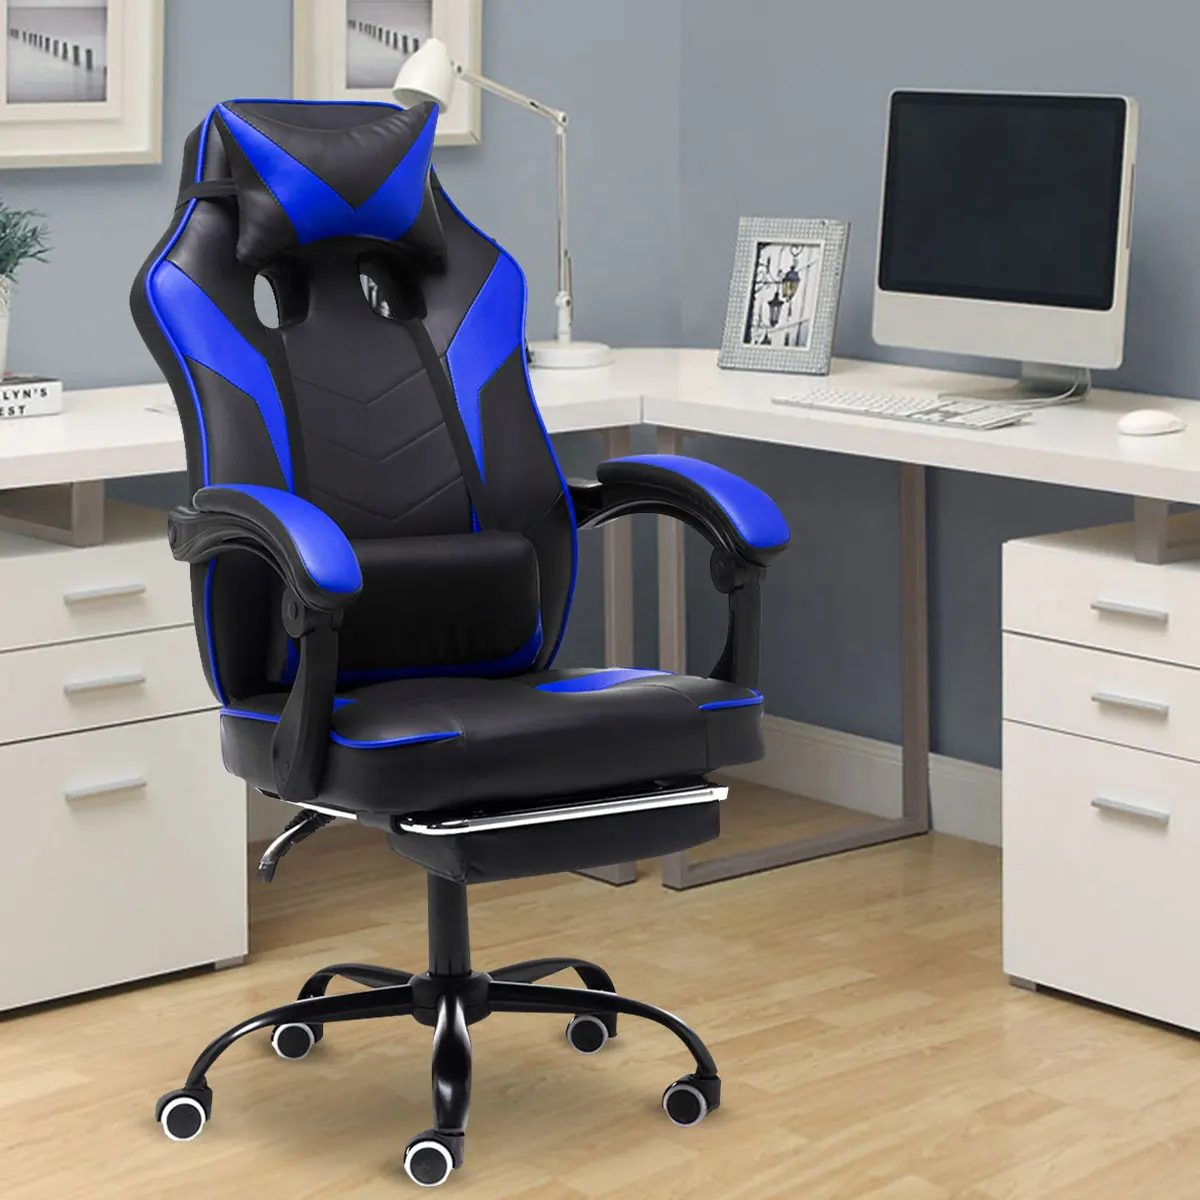 

Игровой стул WCG с подставкой для ног, игровой стул с подъемом, удобные стулья для сидения, эргономичный компьютерный стул с высокой спинкой, ...